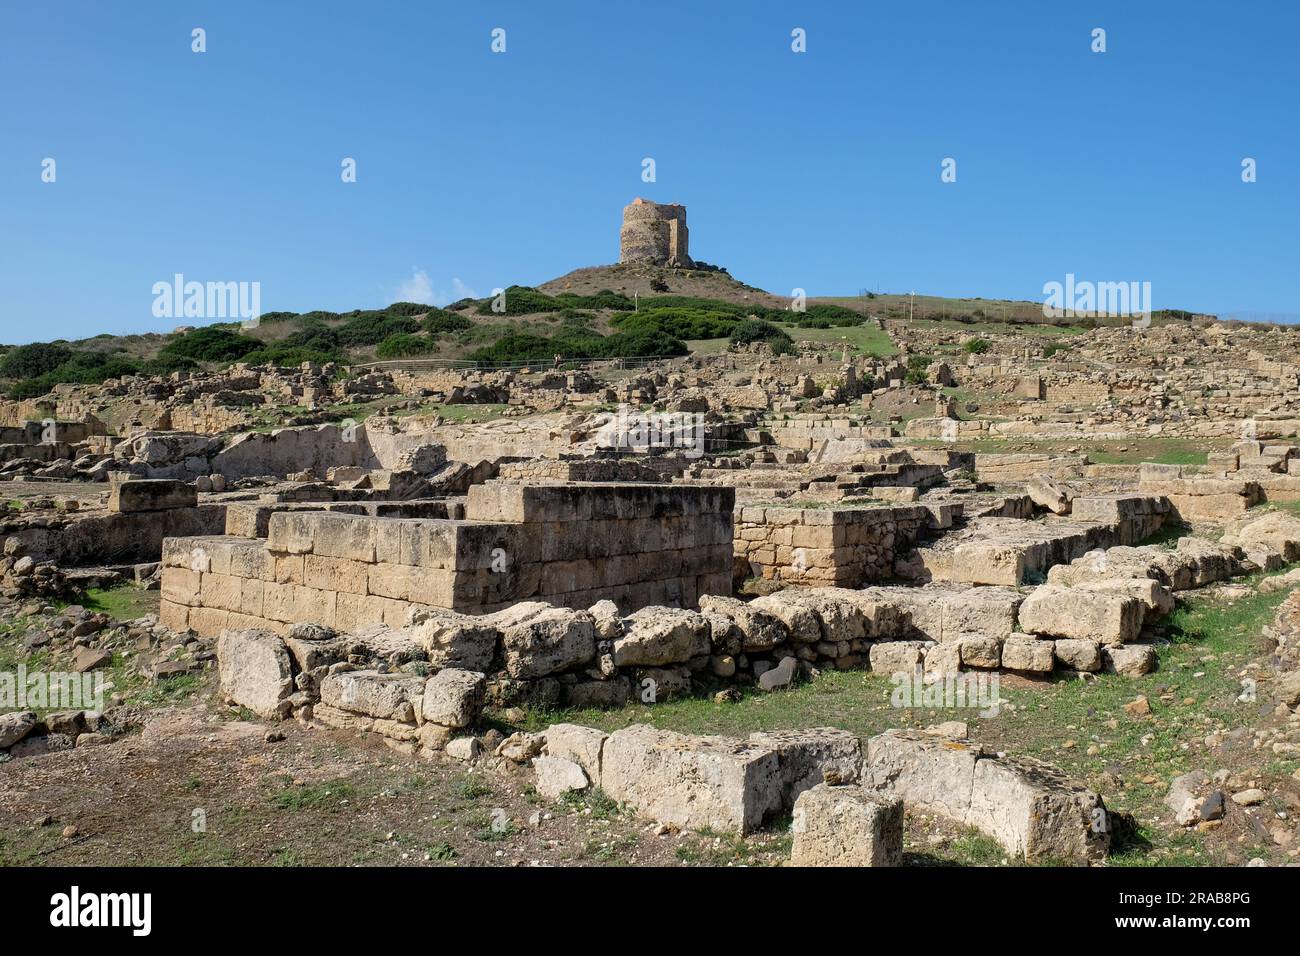 The Nuragic, Phoenician , Carthaginian and Roman archeolgical site of Tharros near Cabras in Western Sardinia Stock Photo